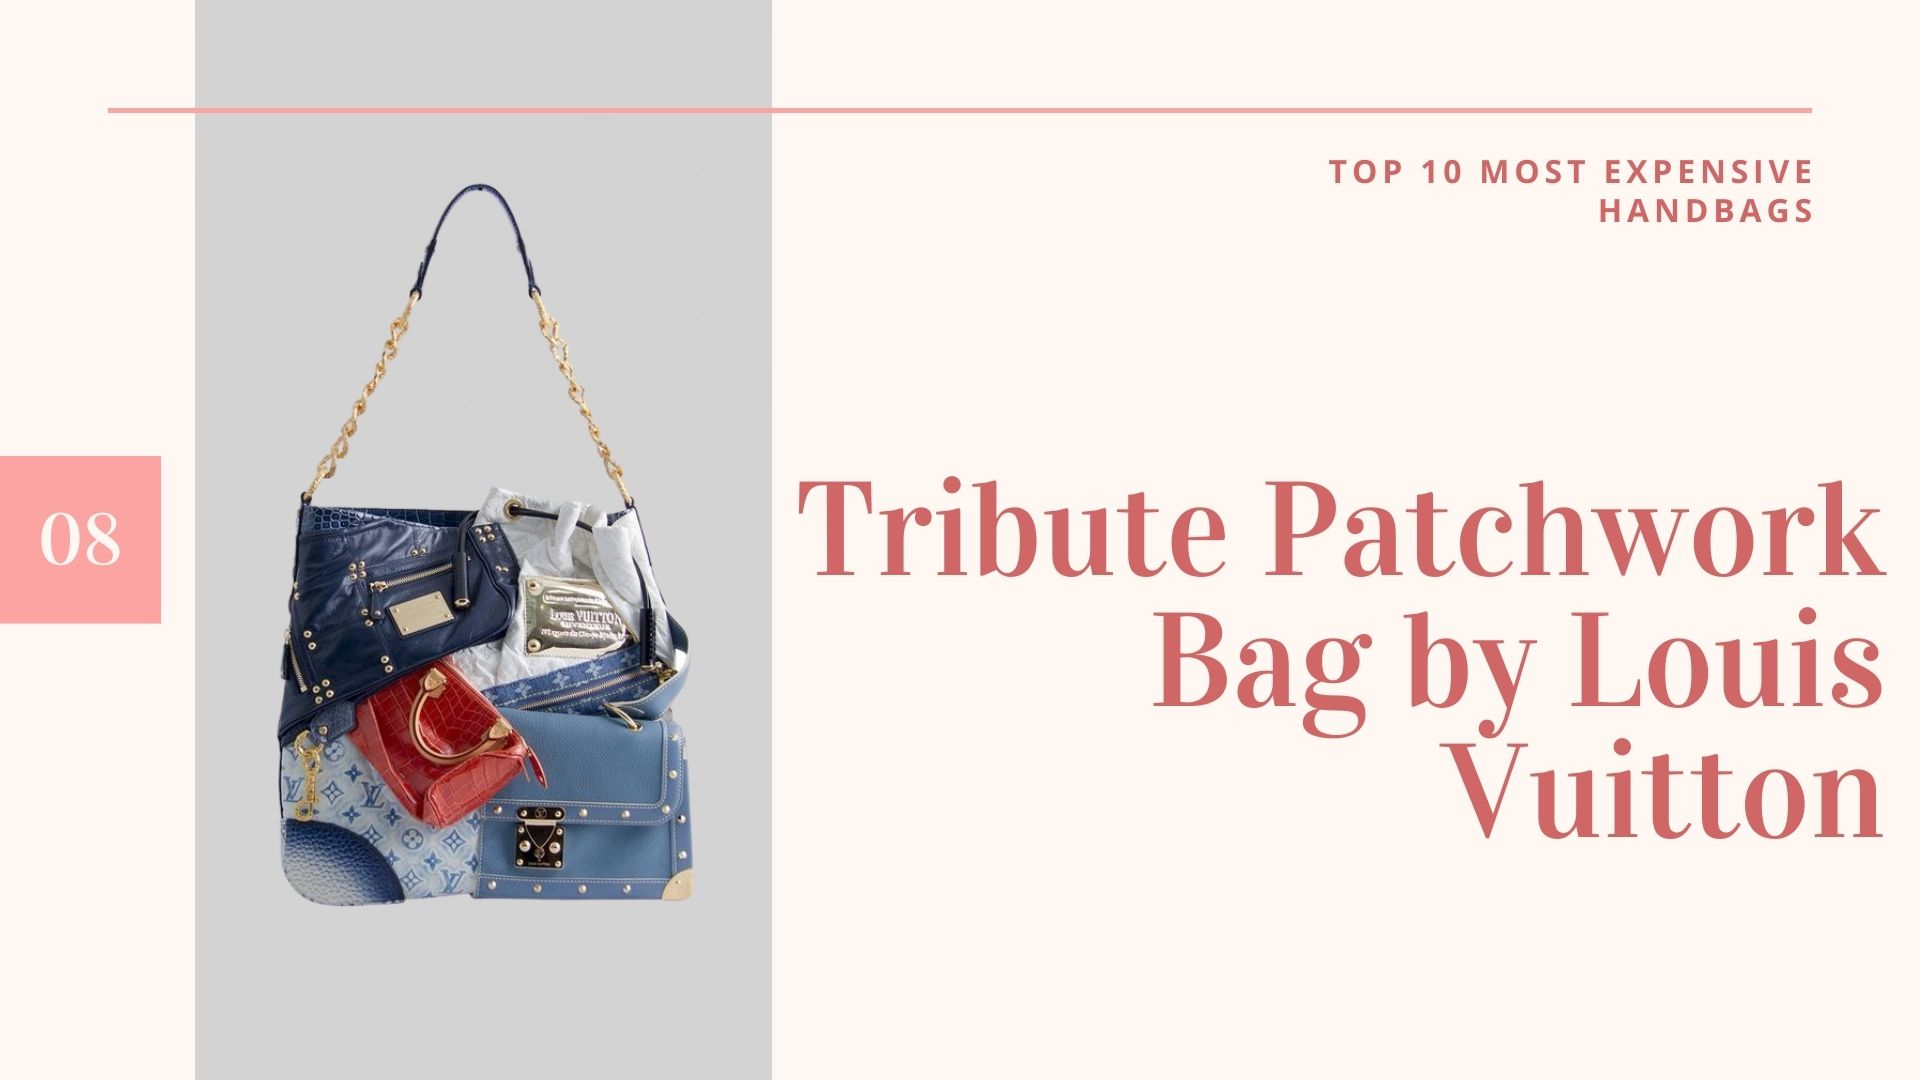 กระเป๋าที่แพงที่สุดในโลก - Tribute Patchwork Bag by Louis Vuitton-กระเป๋าราคาแพงที่สุดในโลก-กระเป๋าราคาแพงที่สุดในโลก-10กระเป๋าแพงที่สุดในโลก-กระเป๋าแพงที่สุดในโลก ราคา